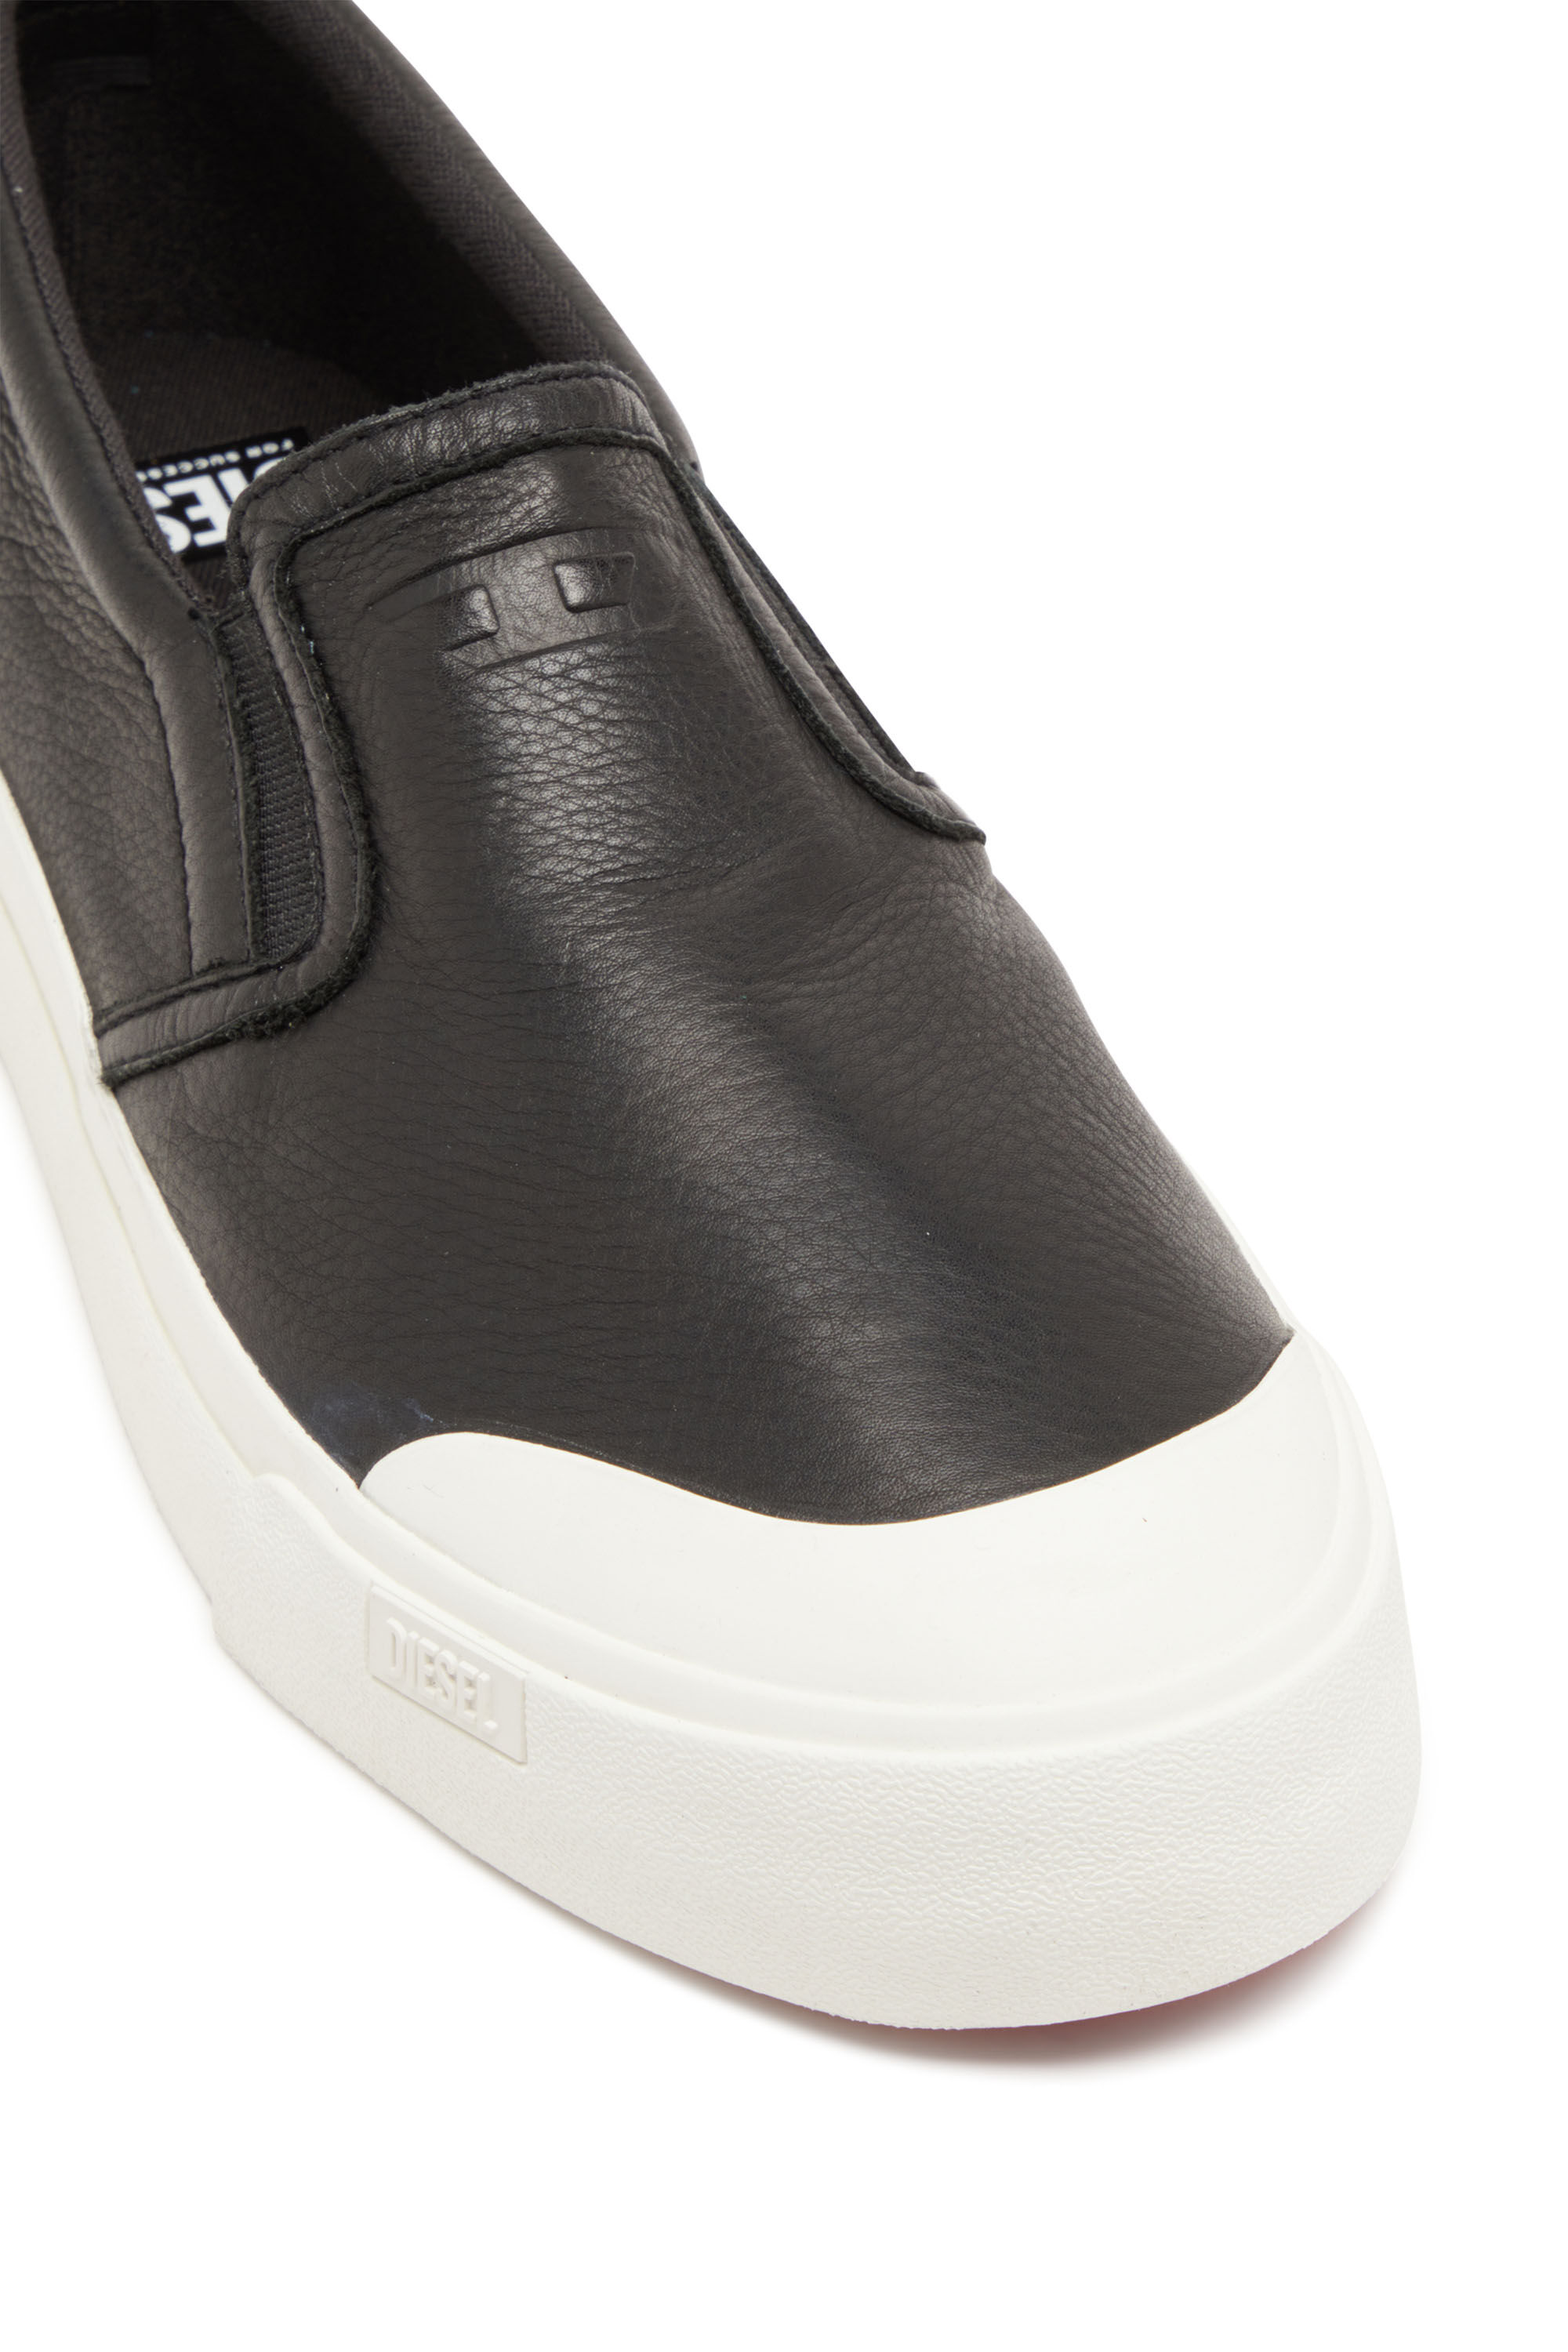 Diesel - S-ATHOS SLIP ON, Man S-Athos-Slip-on sneakers in plain leather in Black - Image 6